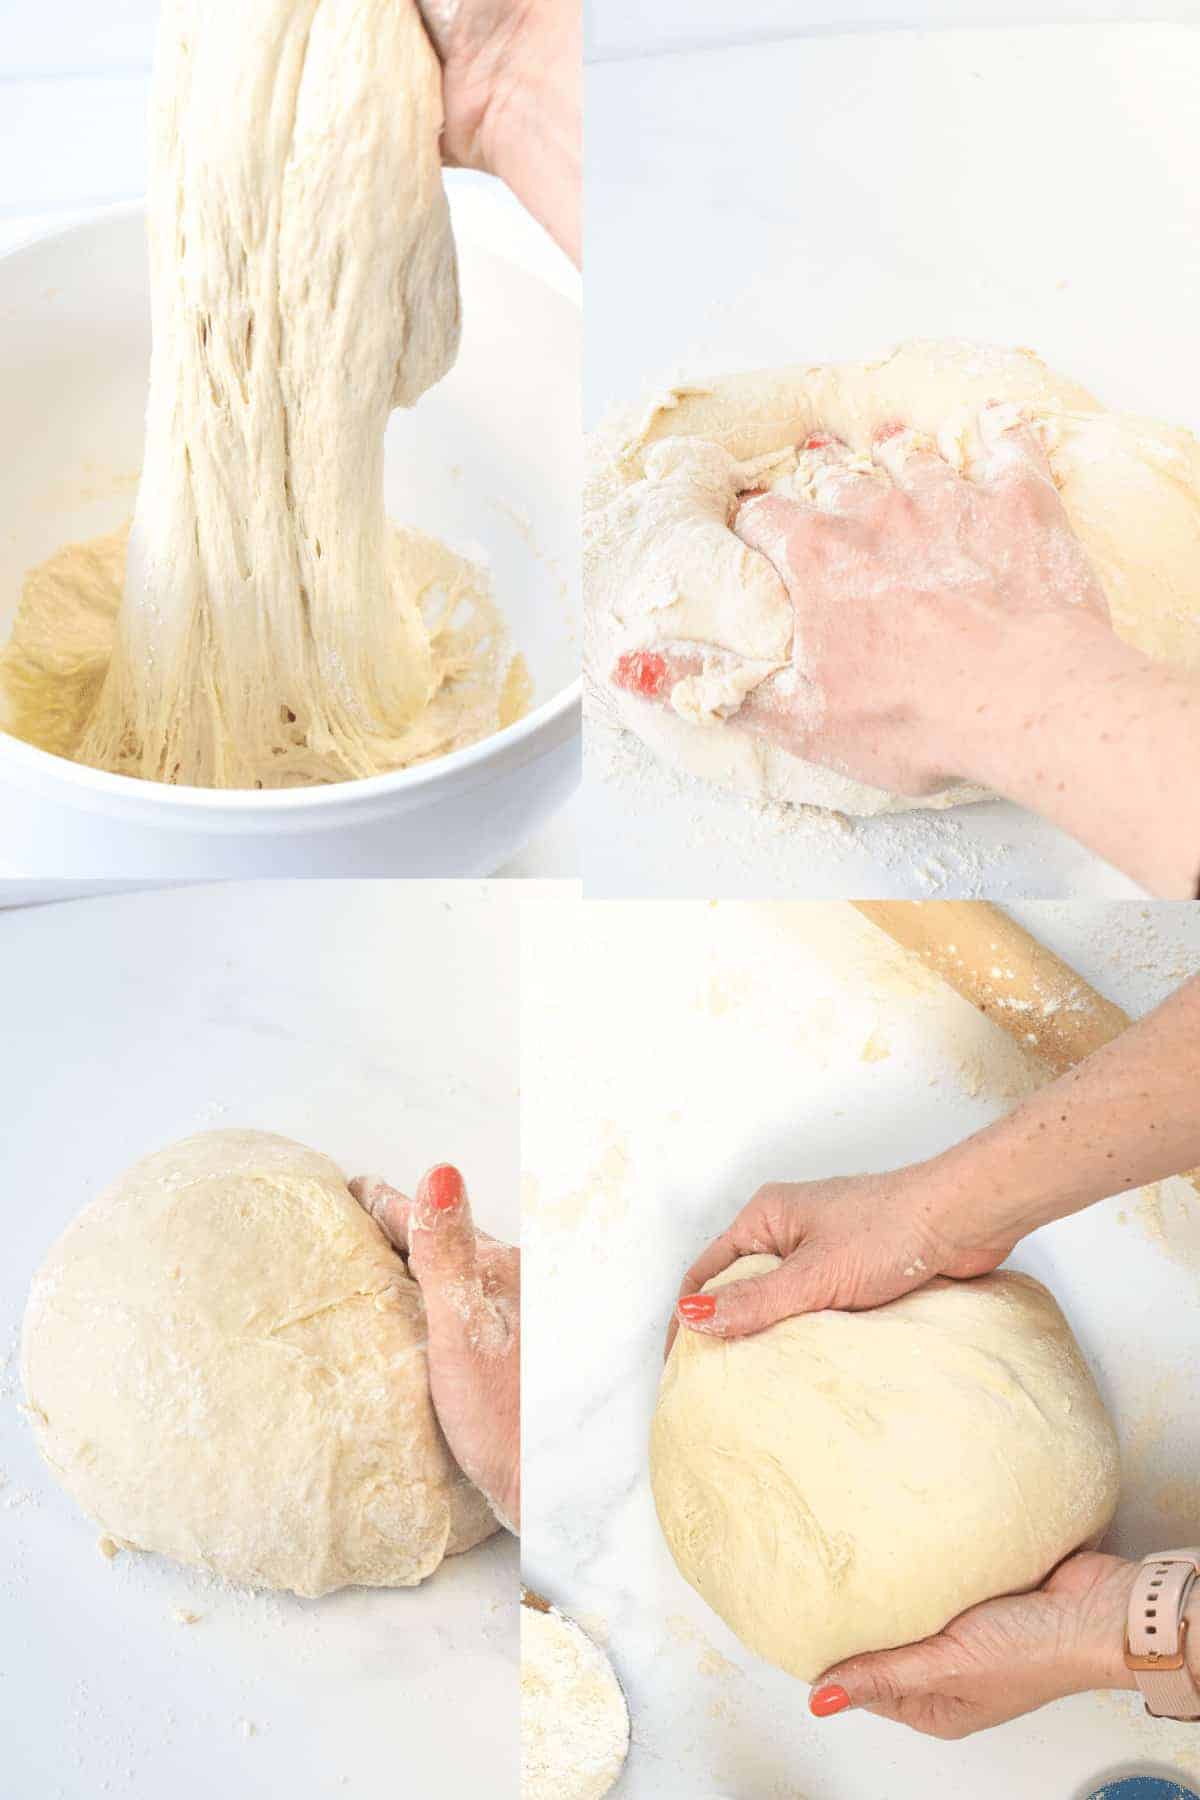 How to make Spelt Pizza Dough